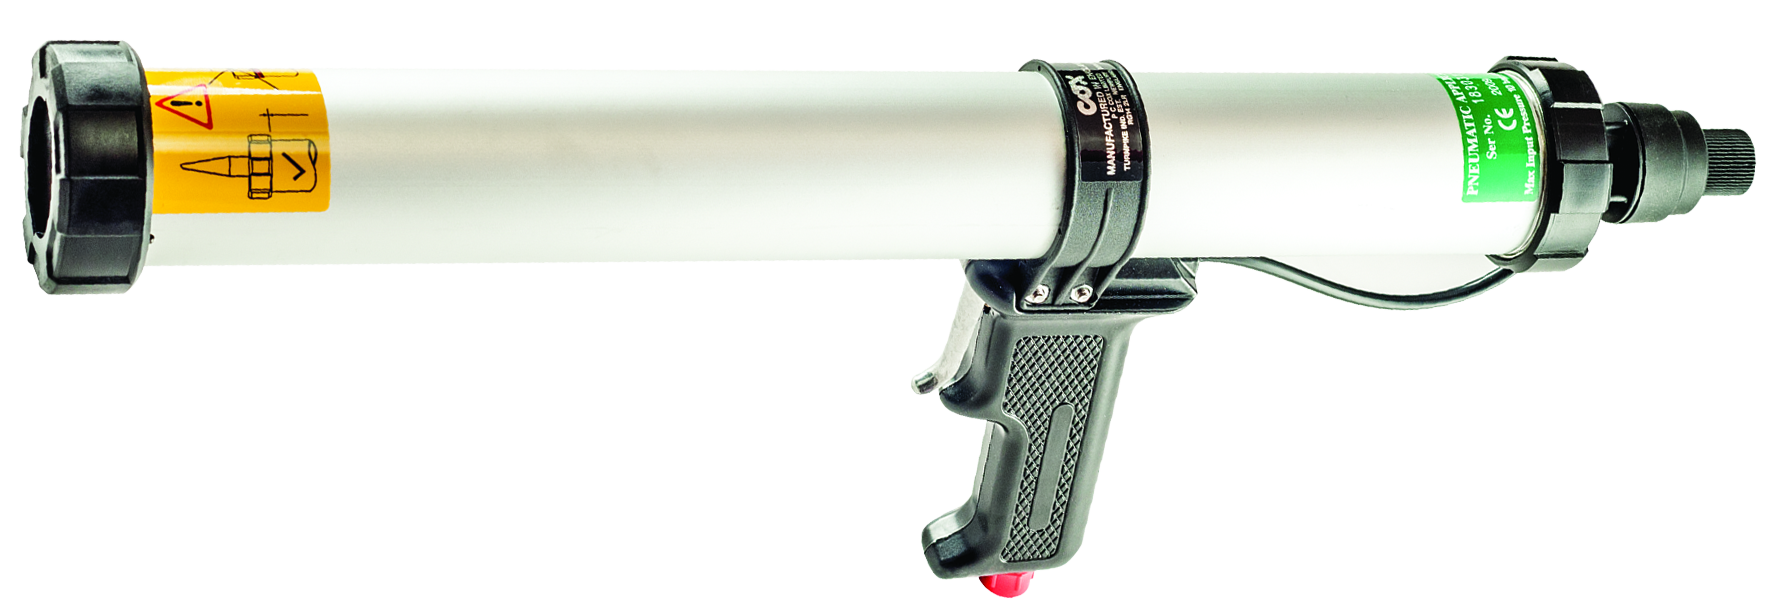 R-GUN Pneumatic Dispenser Gun CFS+